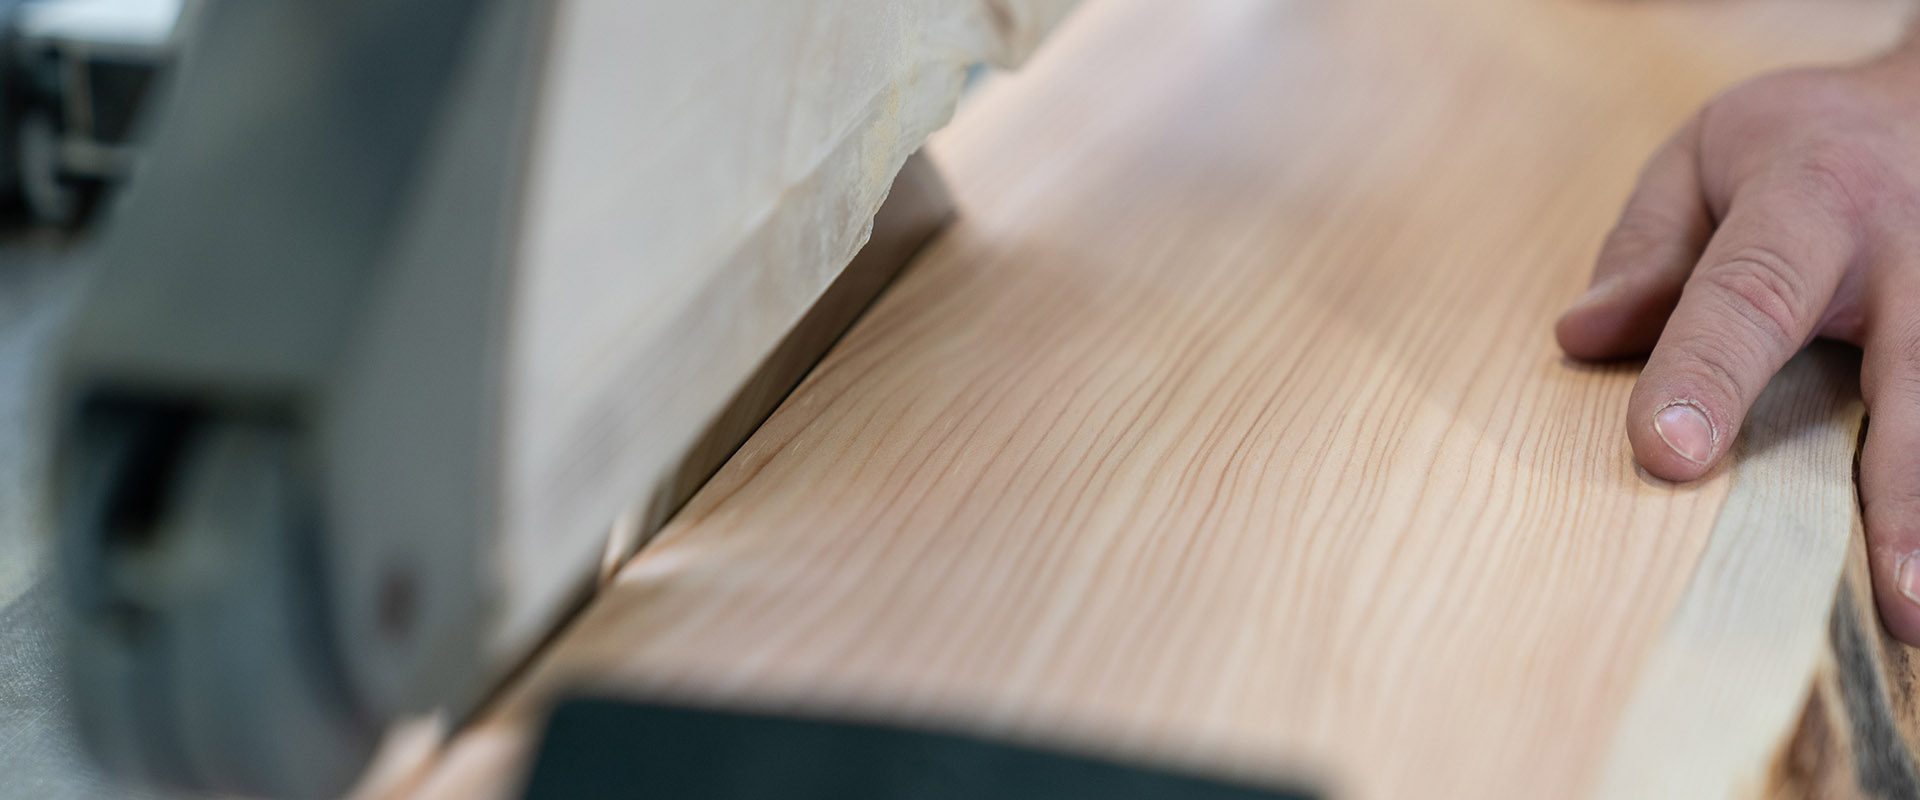 Schreinerei Holz zuschneiden mit TIschsäge